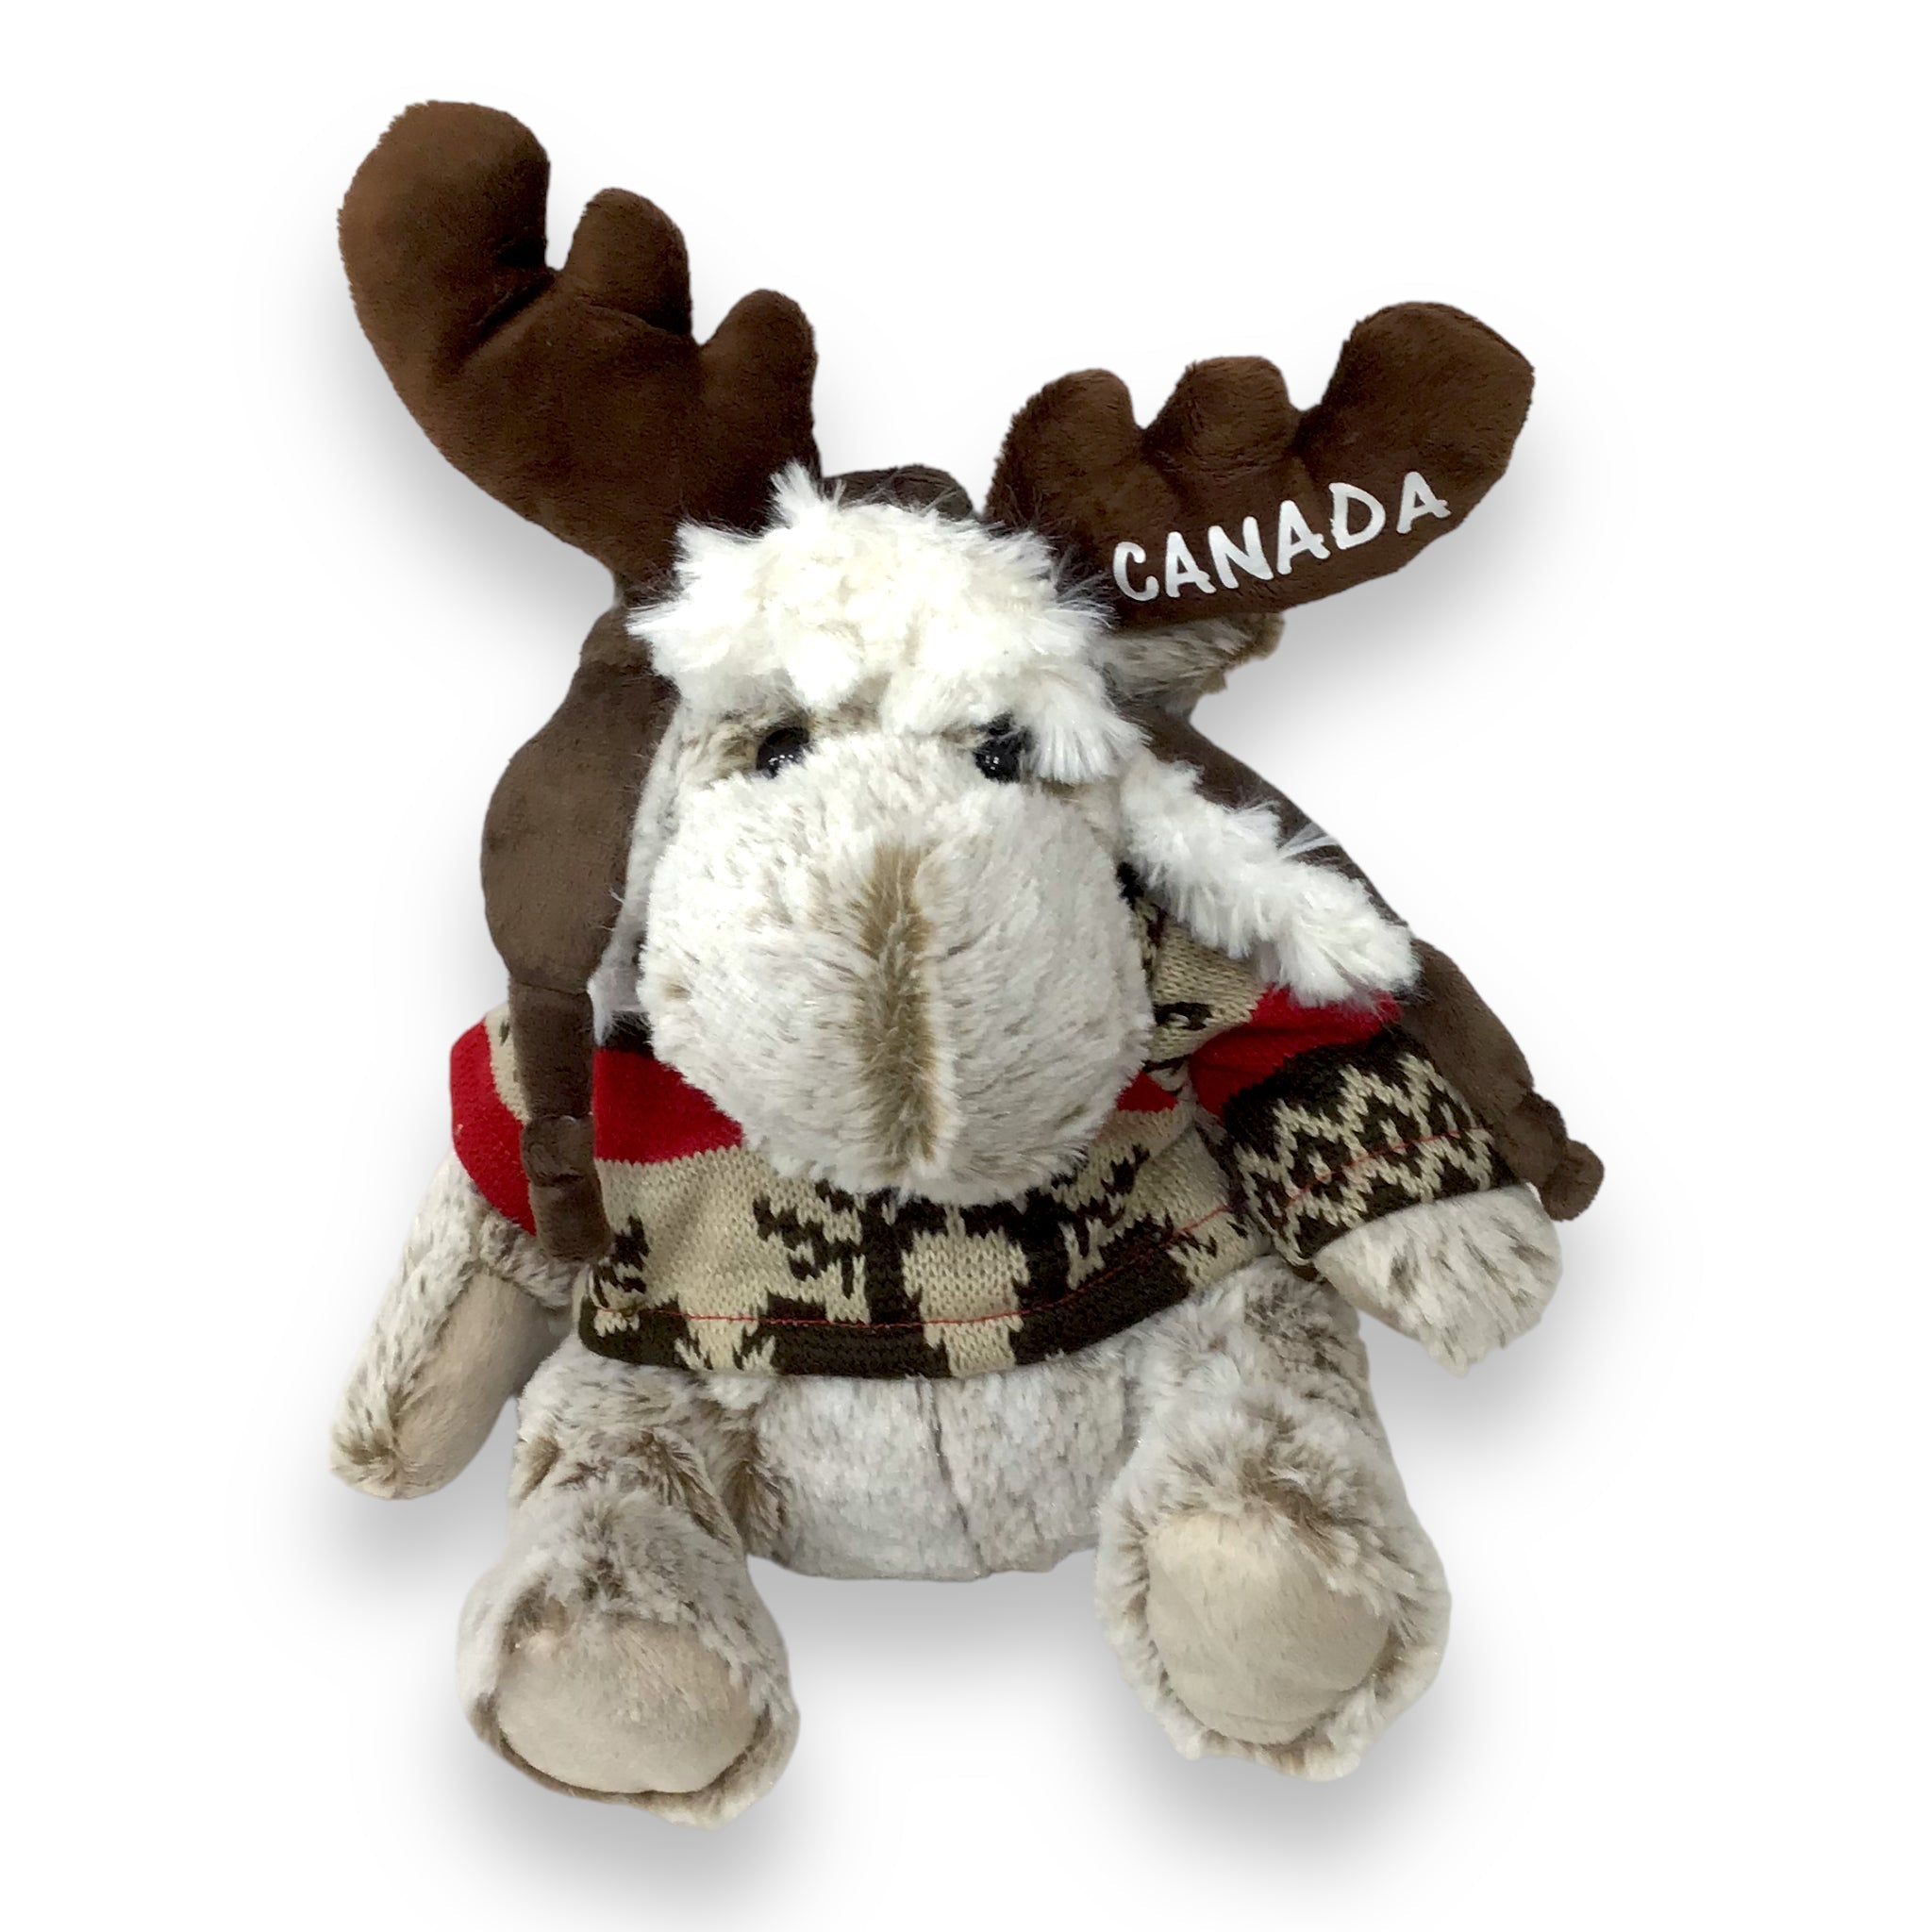 Cute Stuffy Soft Toy -  Canada